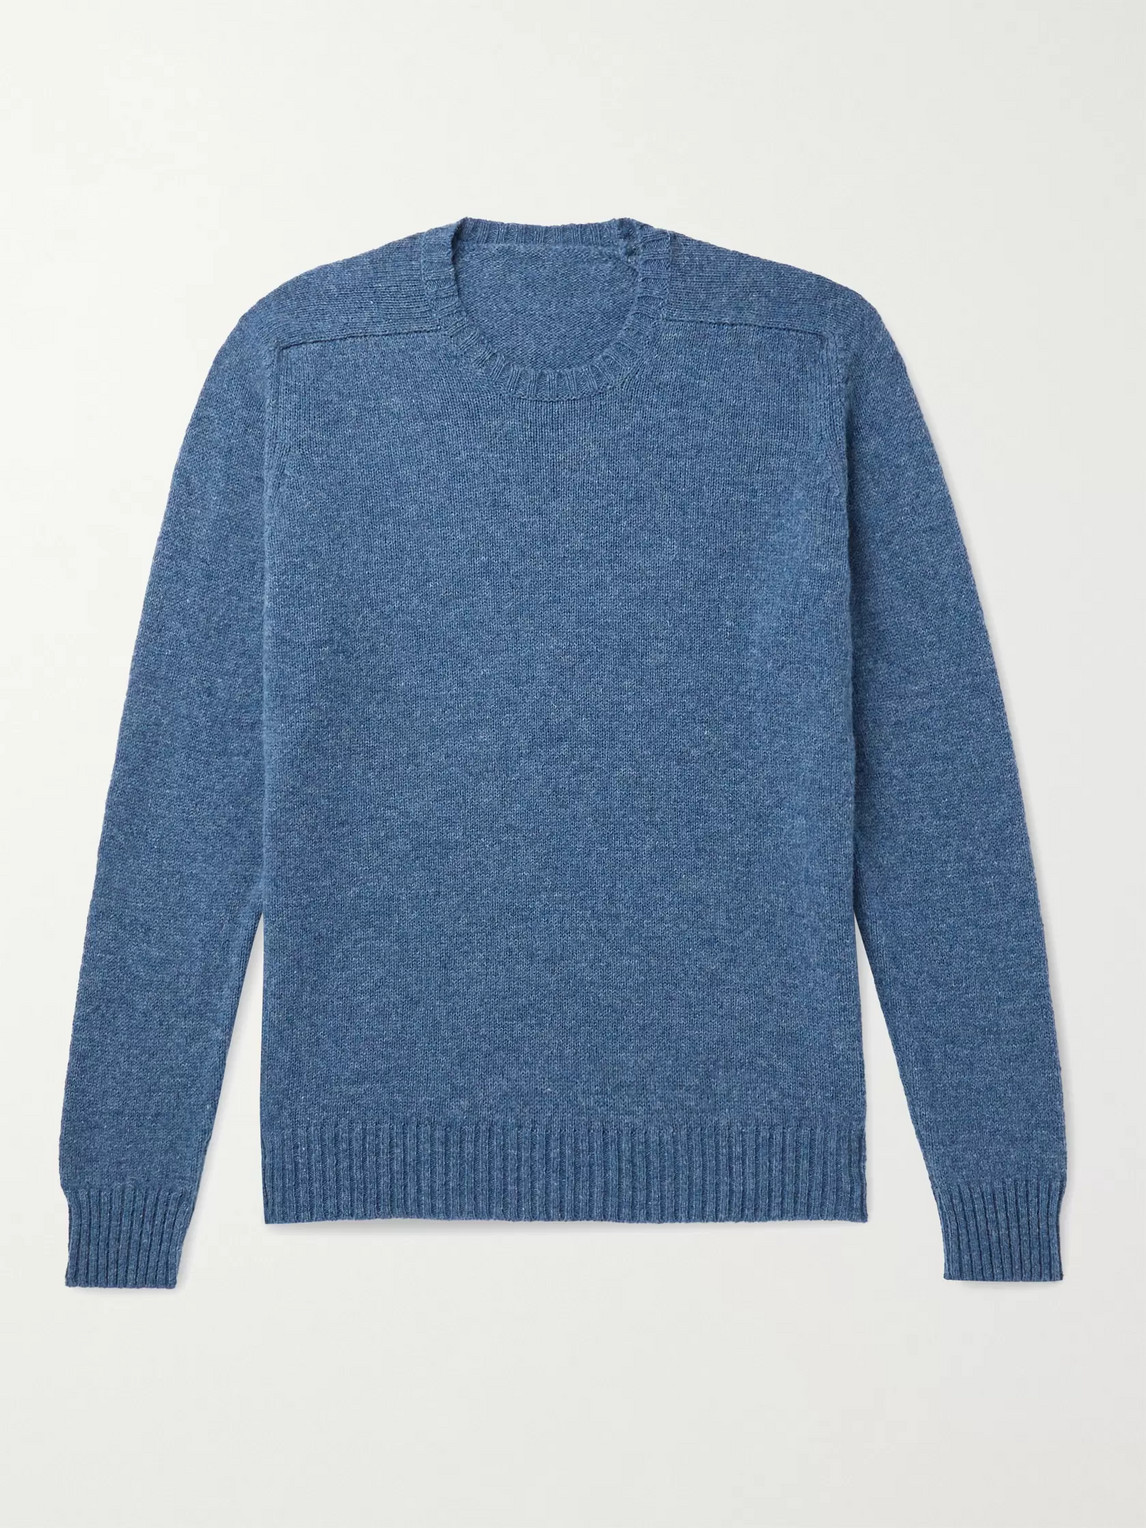 Anderson & Sheppard Shetland Wool Sweater In Blue